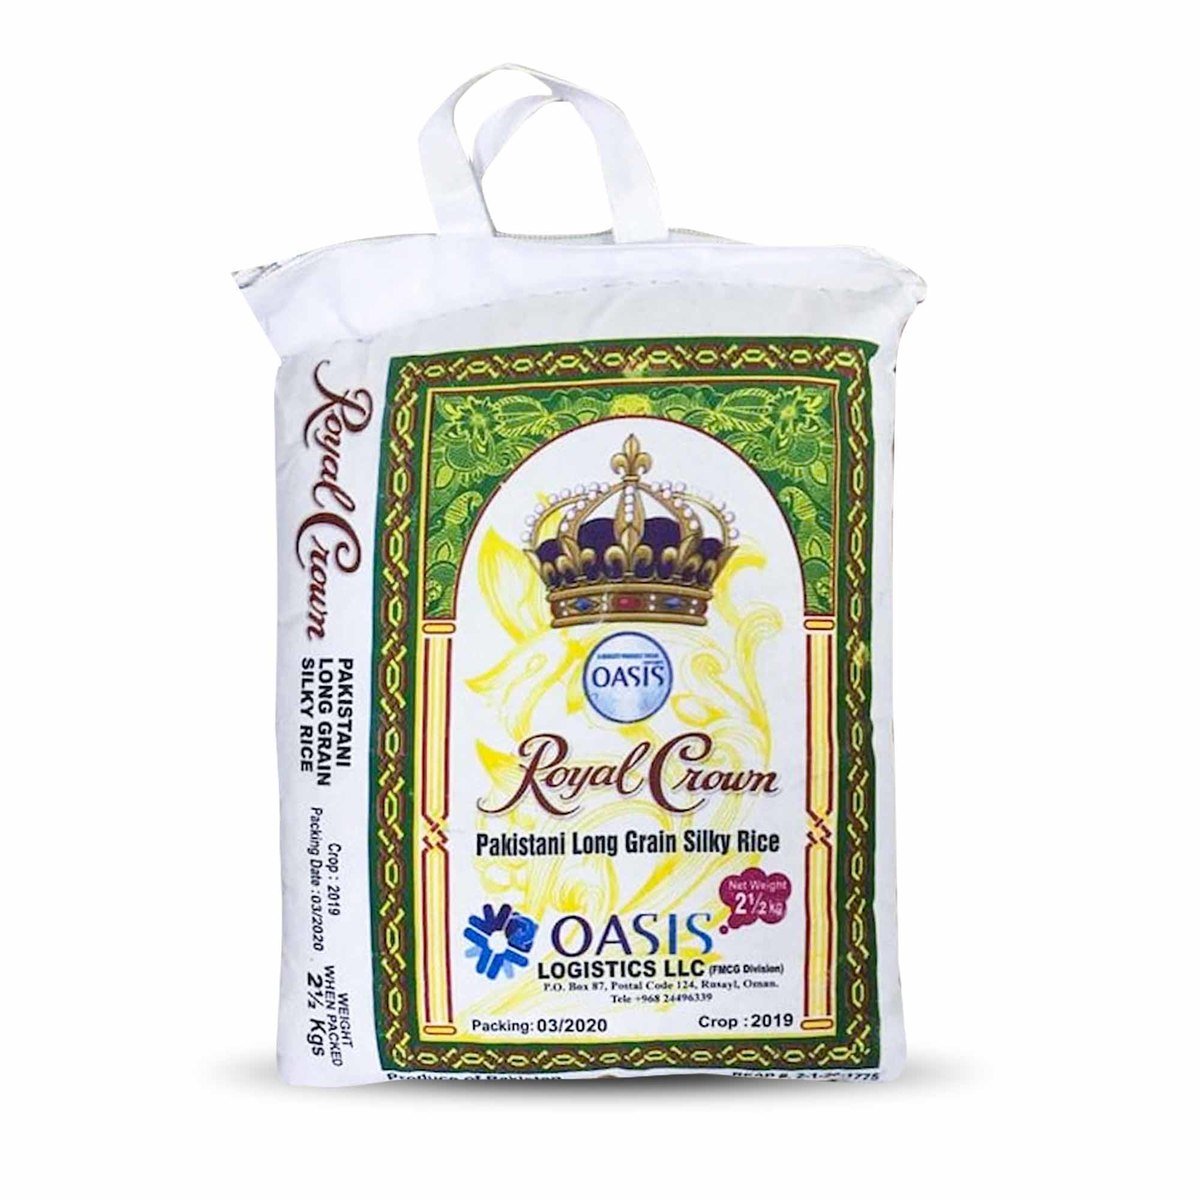 Royal Crown Pakistani  Long Grain Silky Rice 2.5kg